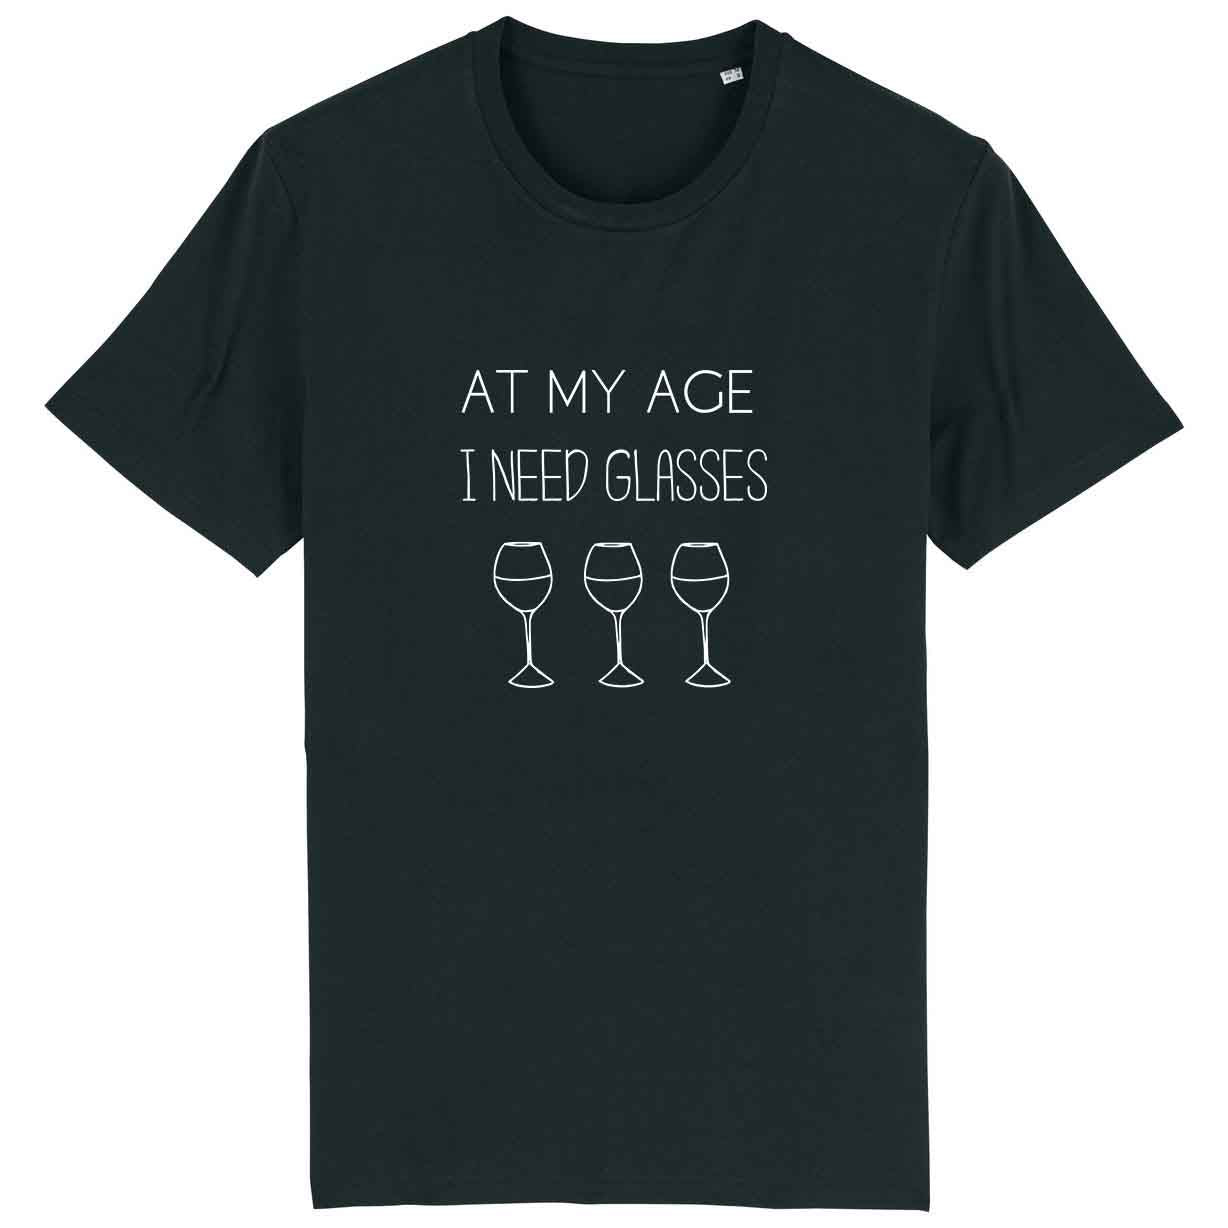 At my age i need glasses - Unisex Organic Shirt